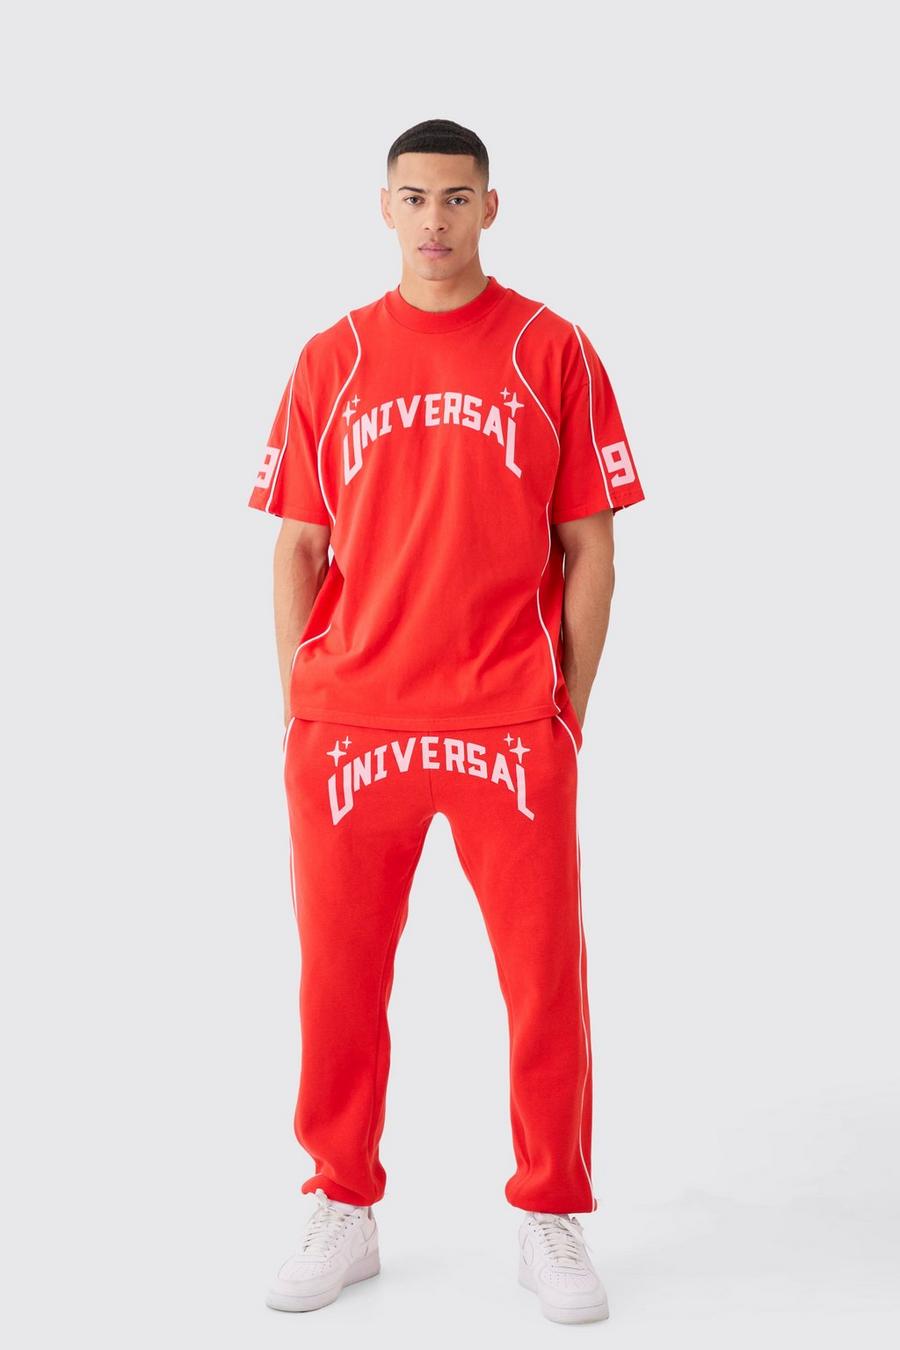 Pantalón deportivo y camiseta oversize con cuello extendido y estampado gráfico Universal, Red